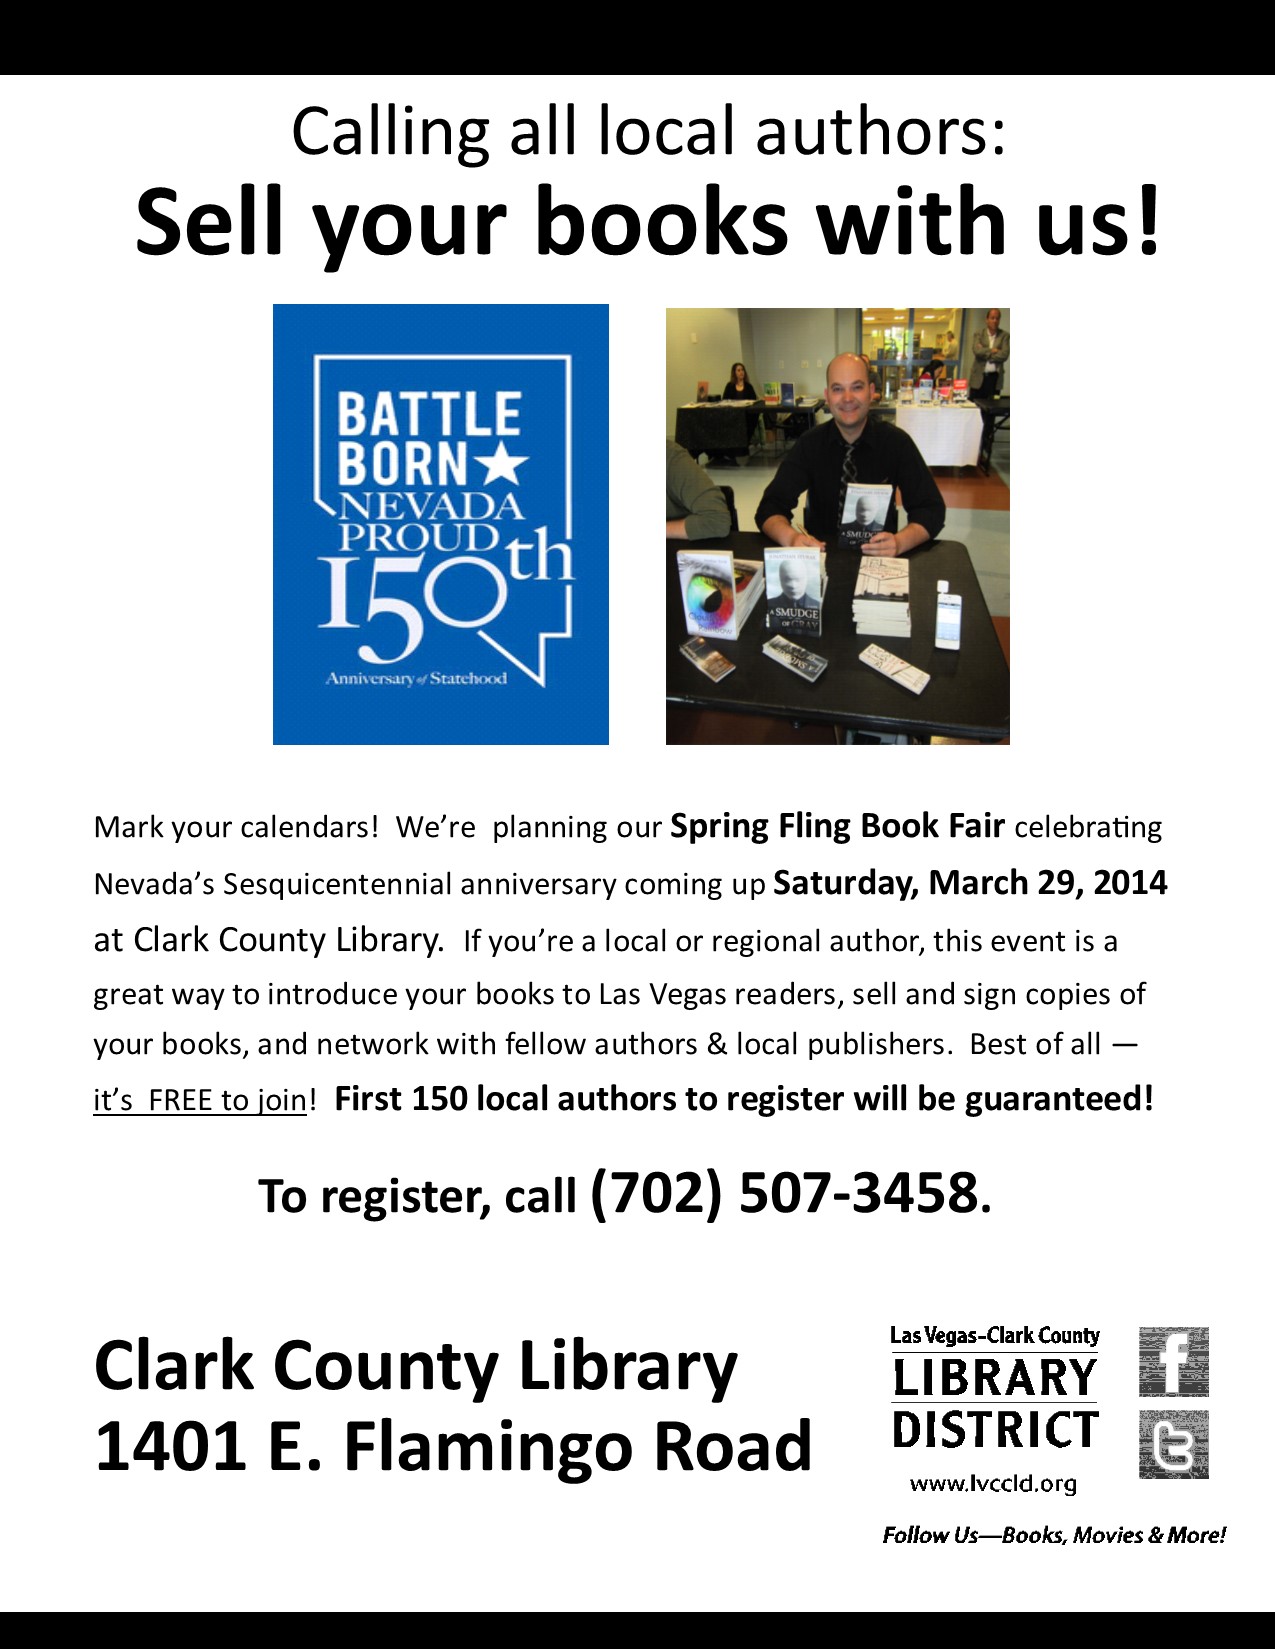 5th Annual Spring Fling Book Fair